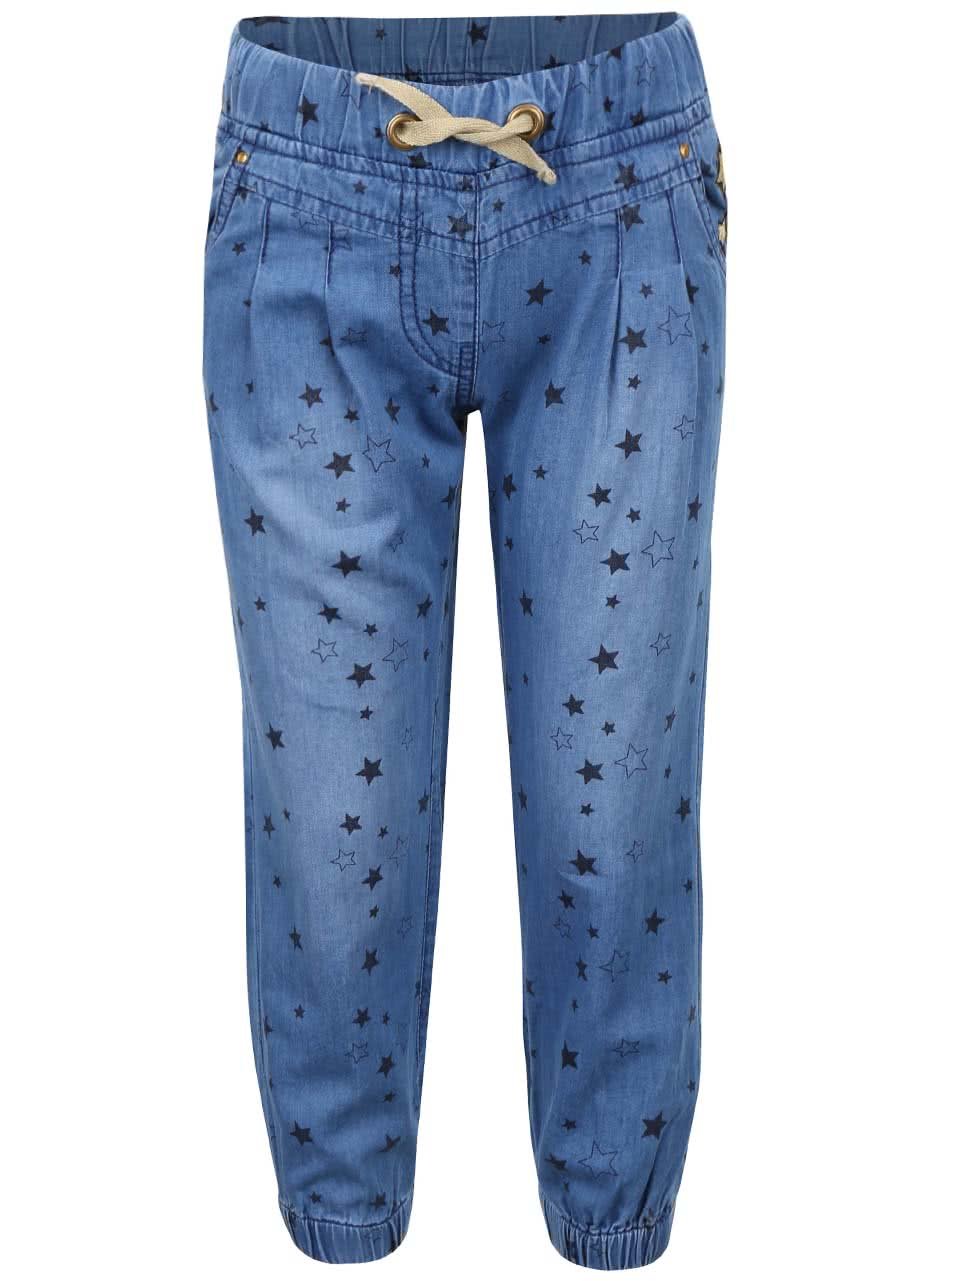 Modré holčičí denimové kalhoty s hvězdičkami 5.10.15.